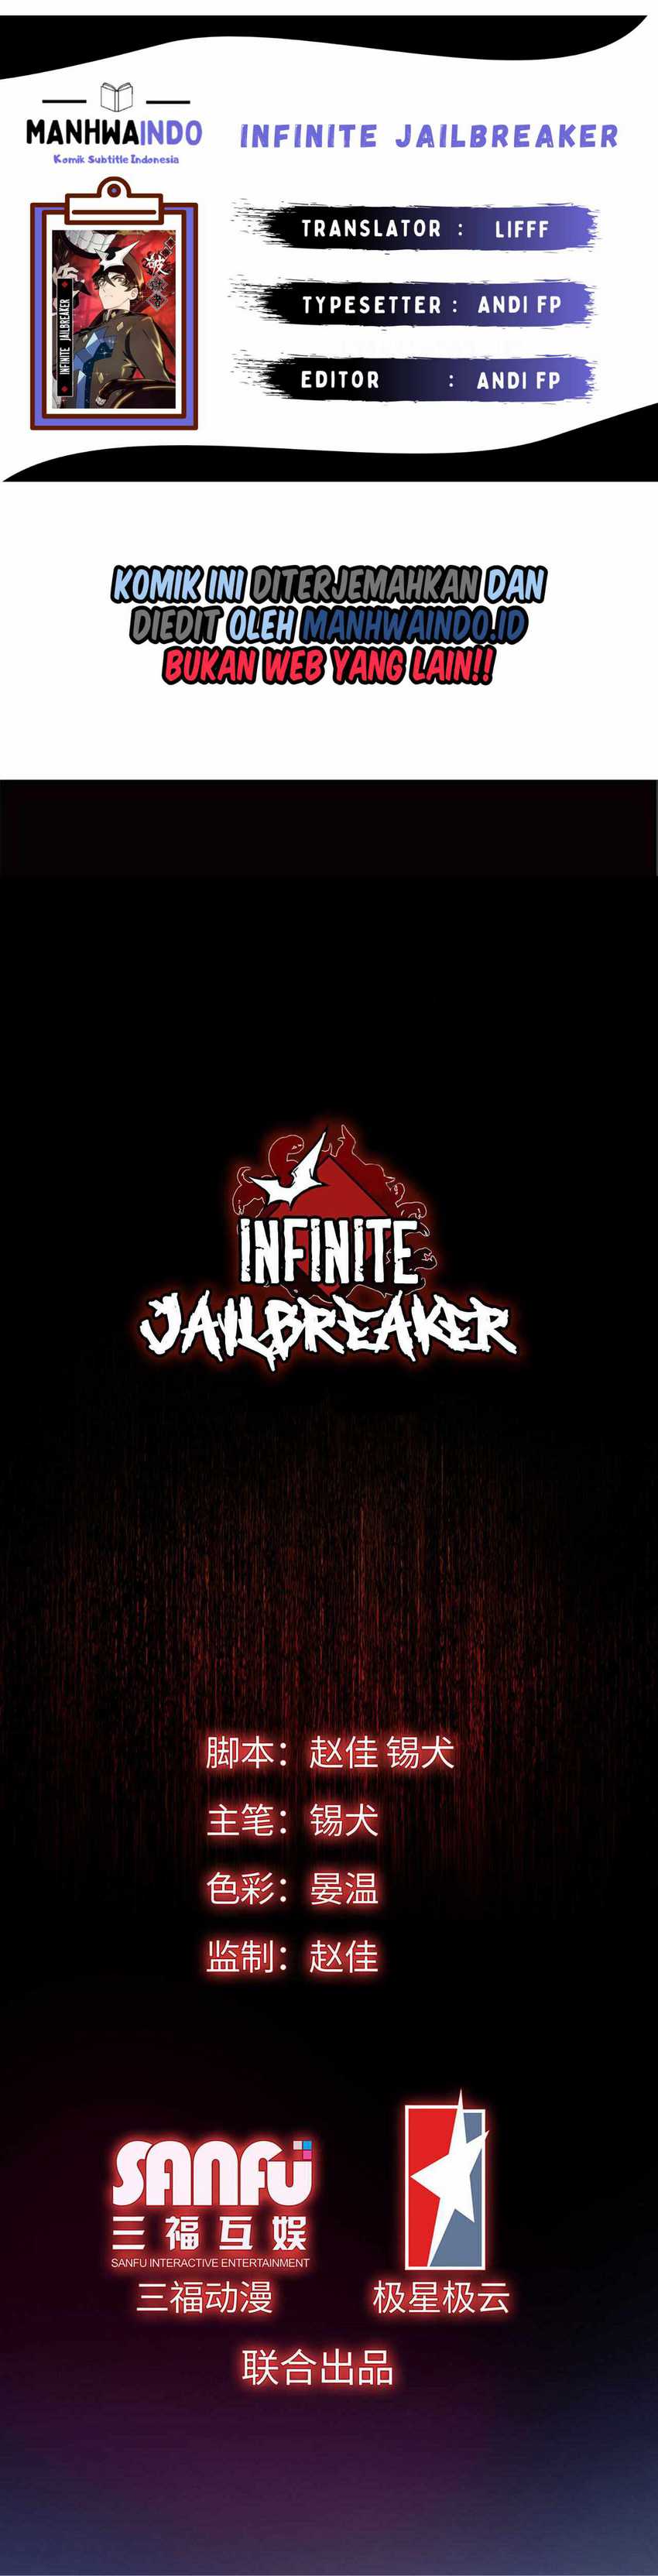 Infinite Jailbreaker Chapter 03